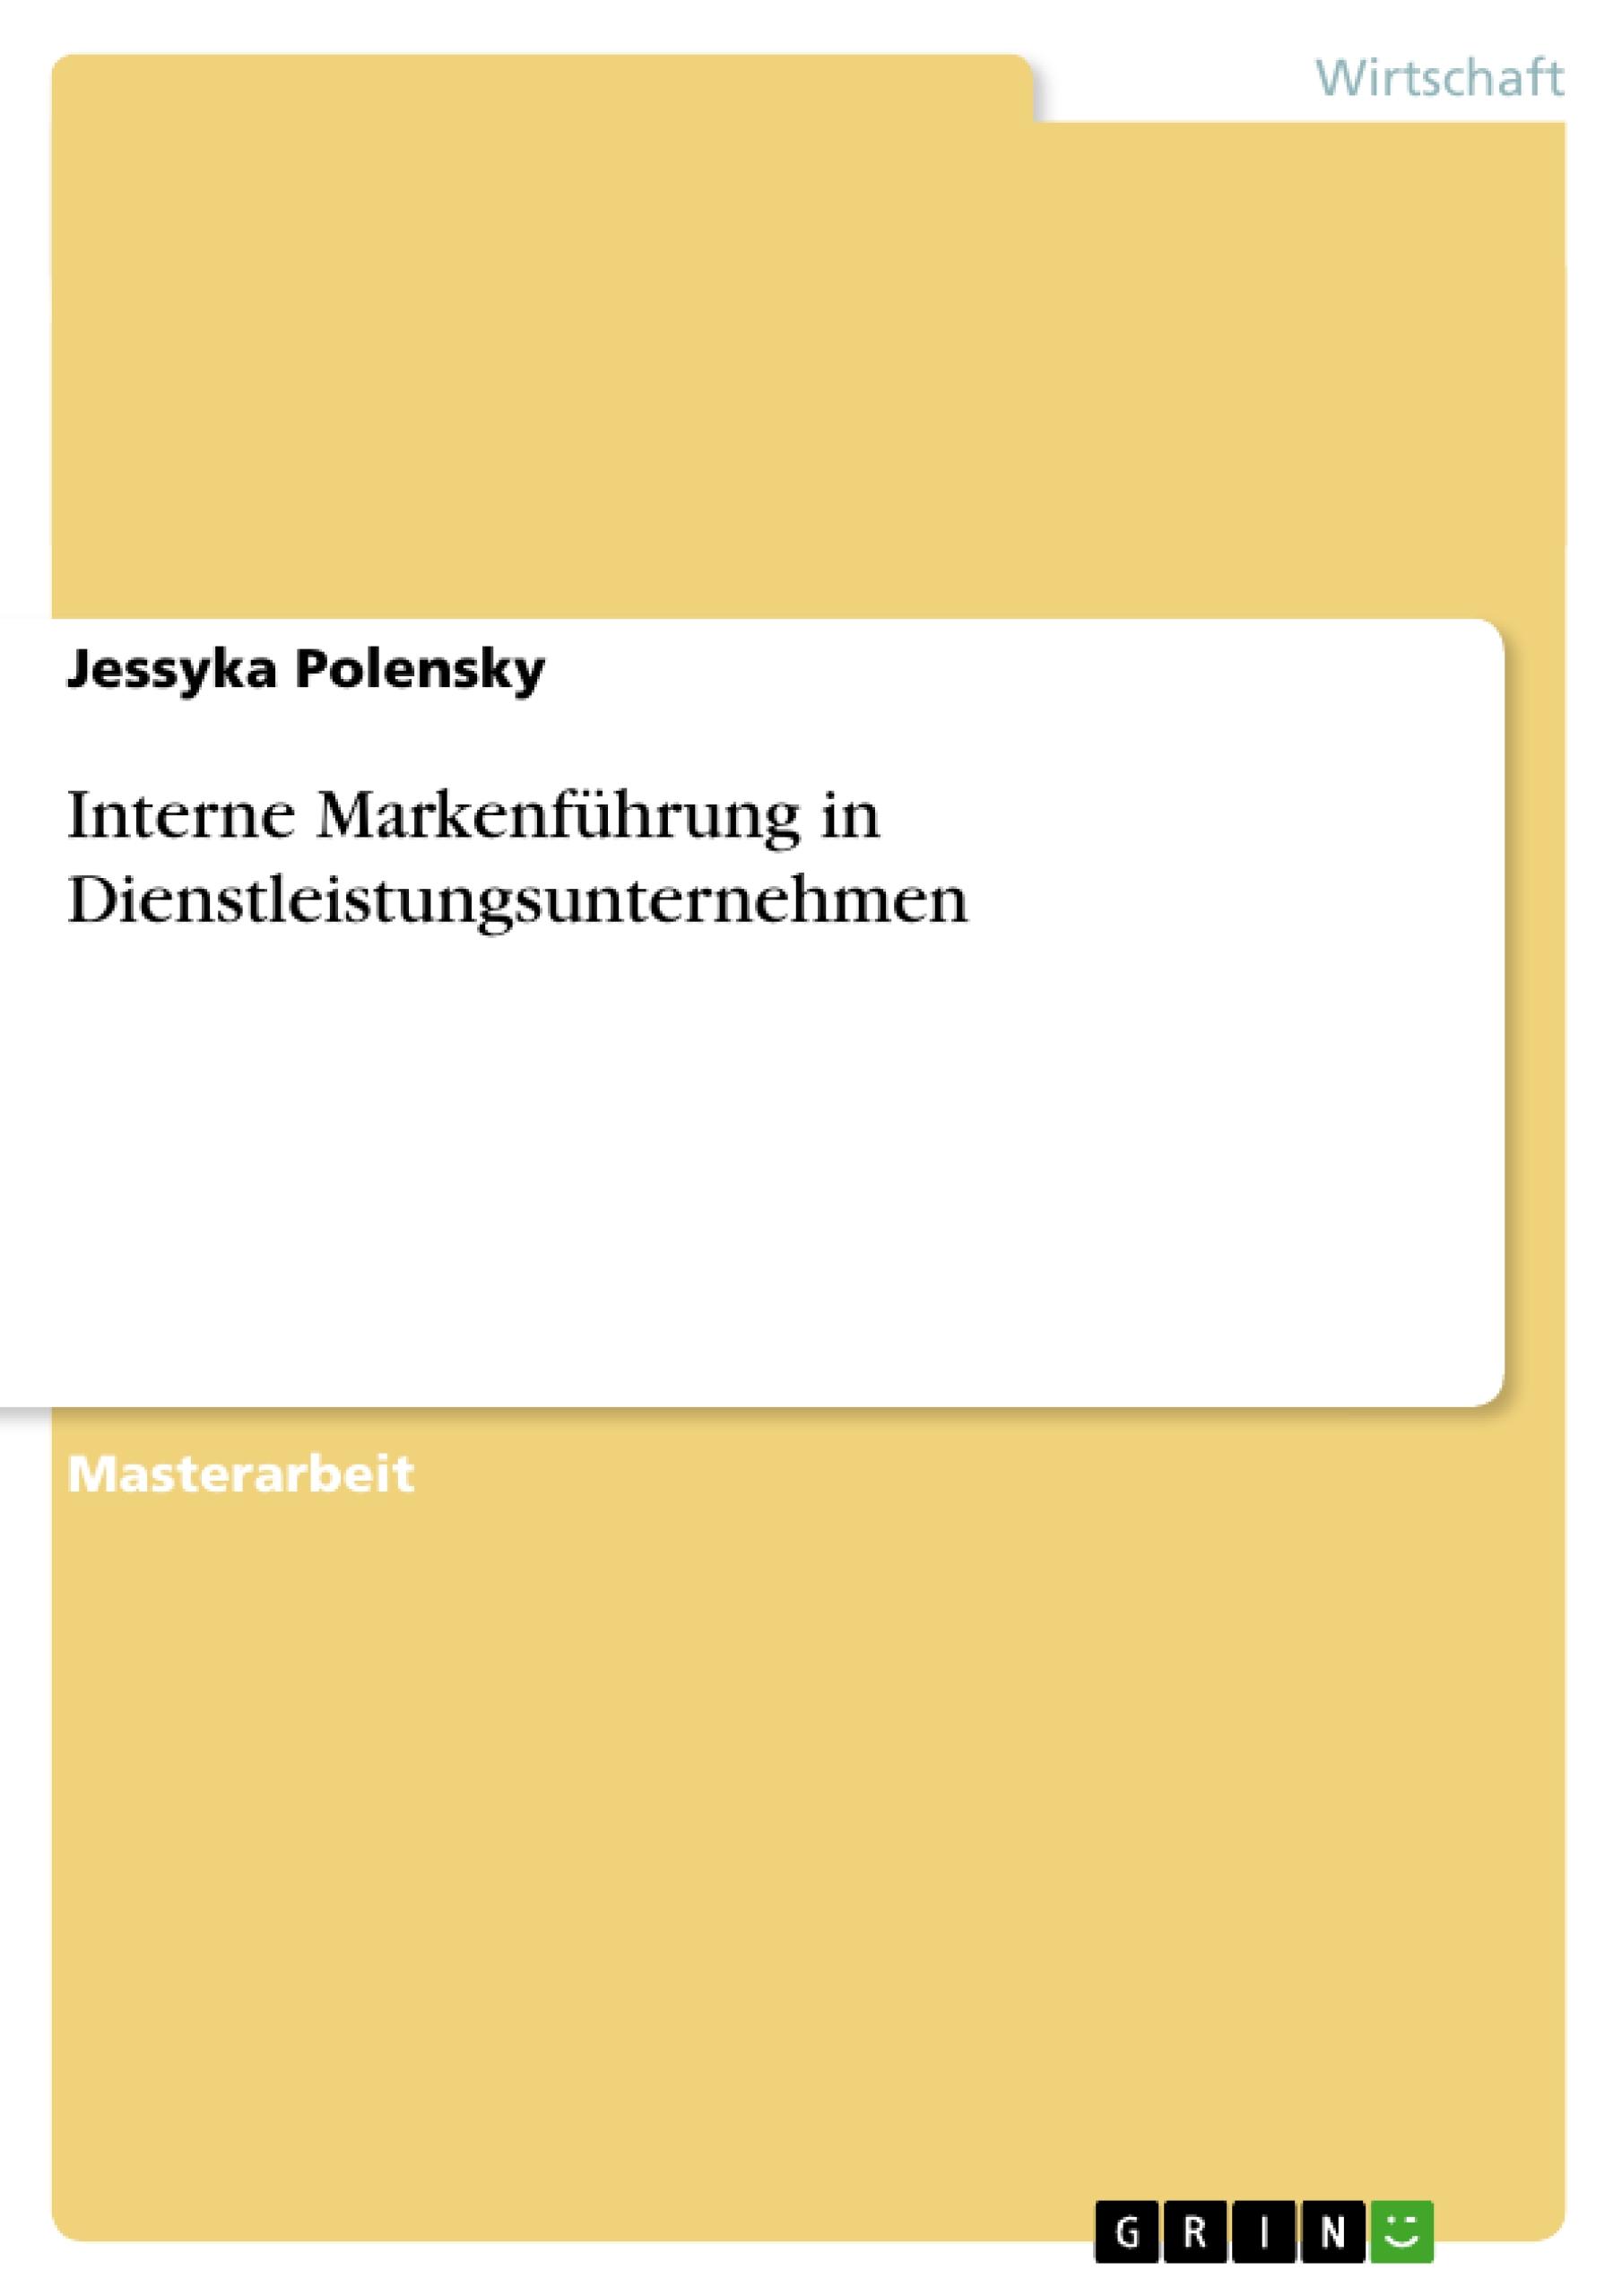 Interne Markenfuehrung in Dienstleistungsunternehmen - Polensky, Jessyka